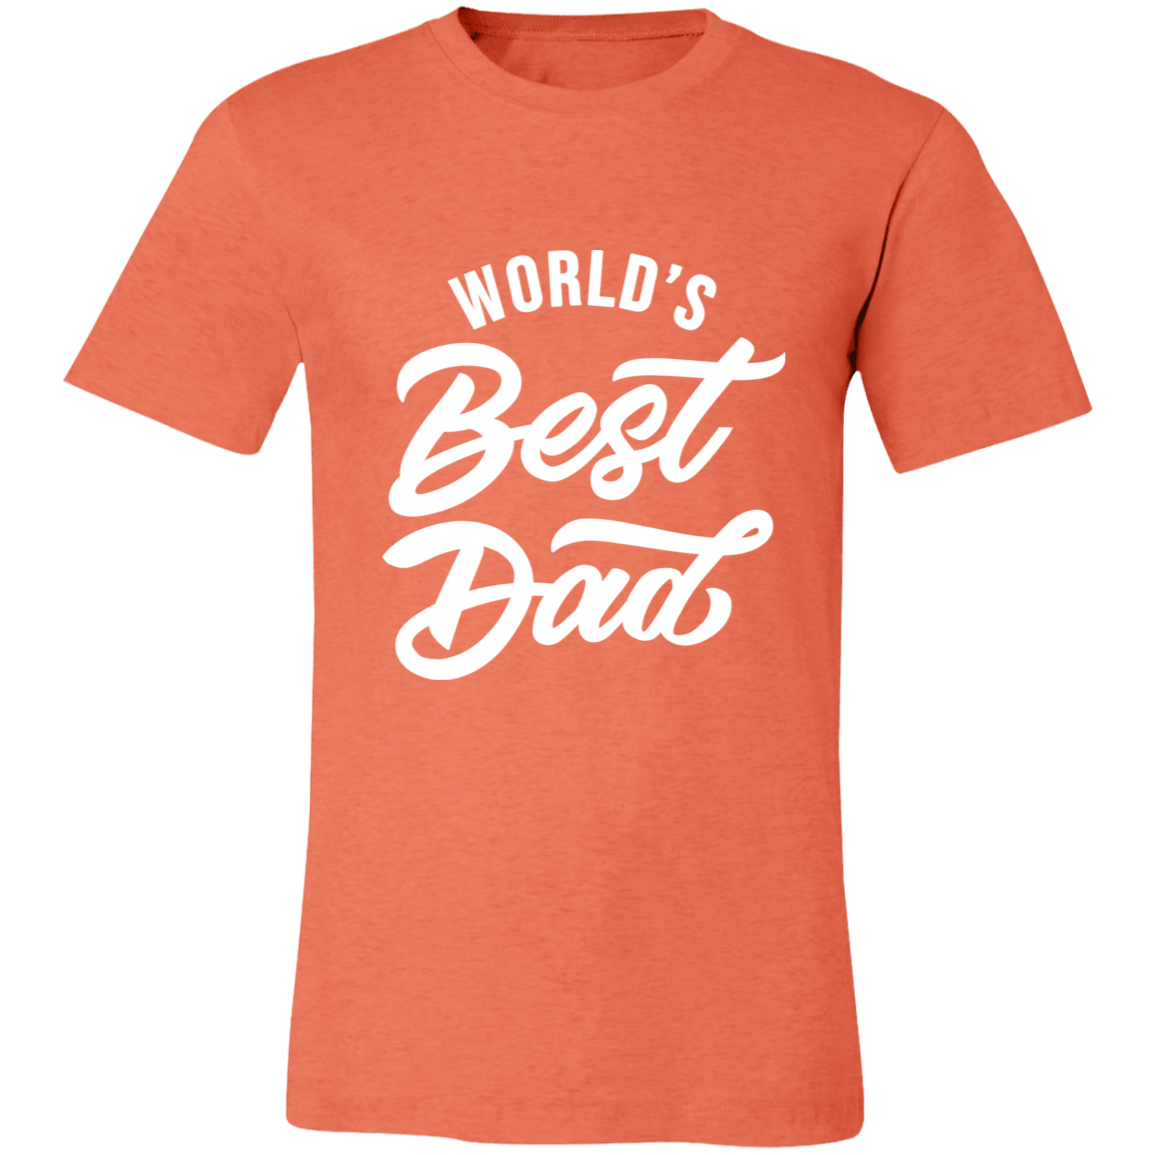 World's Best Dad T-shirt